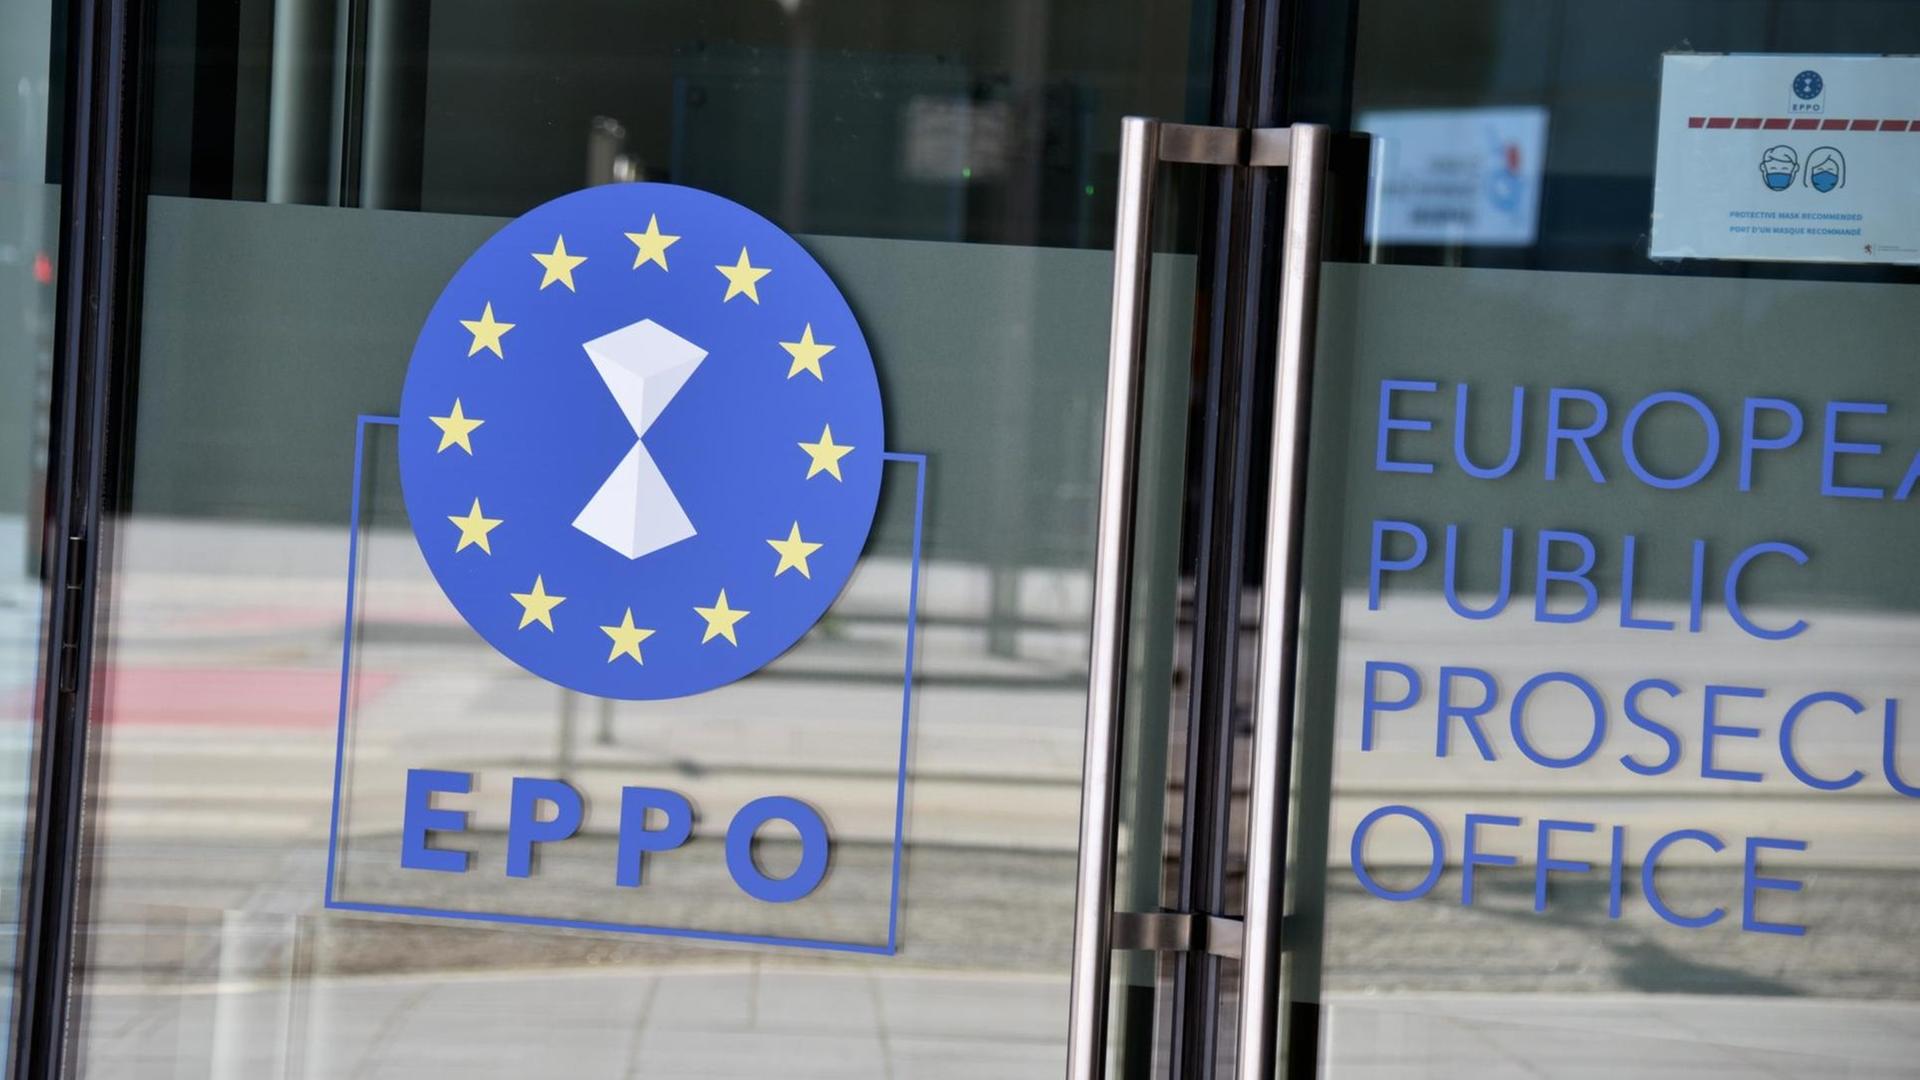 Das Emblem der Europäischen Staatsanwaltschaft, EuStA, (englisch European Public Prosecutors Office, EPPO), auf einer Glasüre zum Bürogebäude.